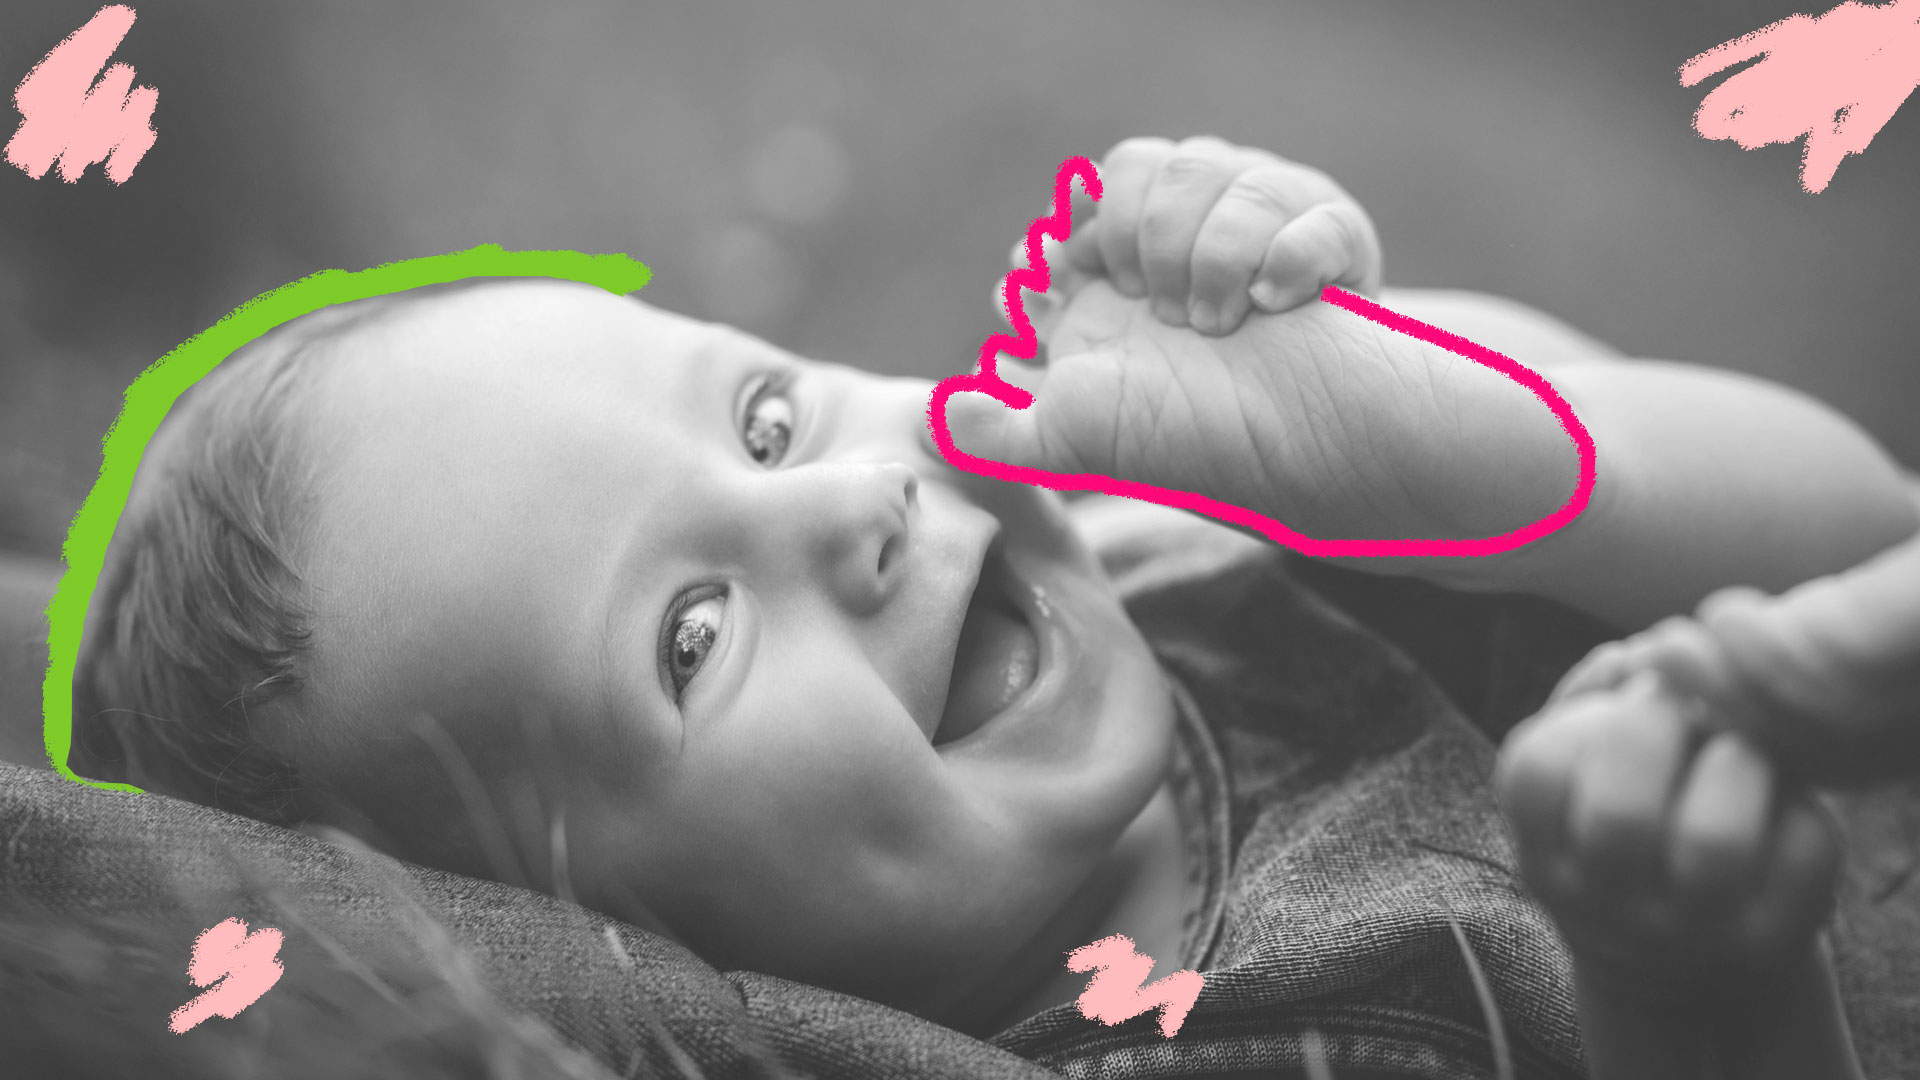 Músicas para cada fase das crianças: Foto em preto e branco mostra um bebê sorrindo com o pé na boca.